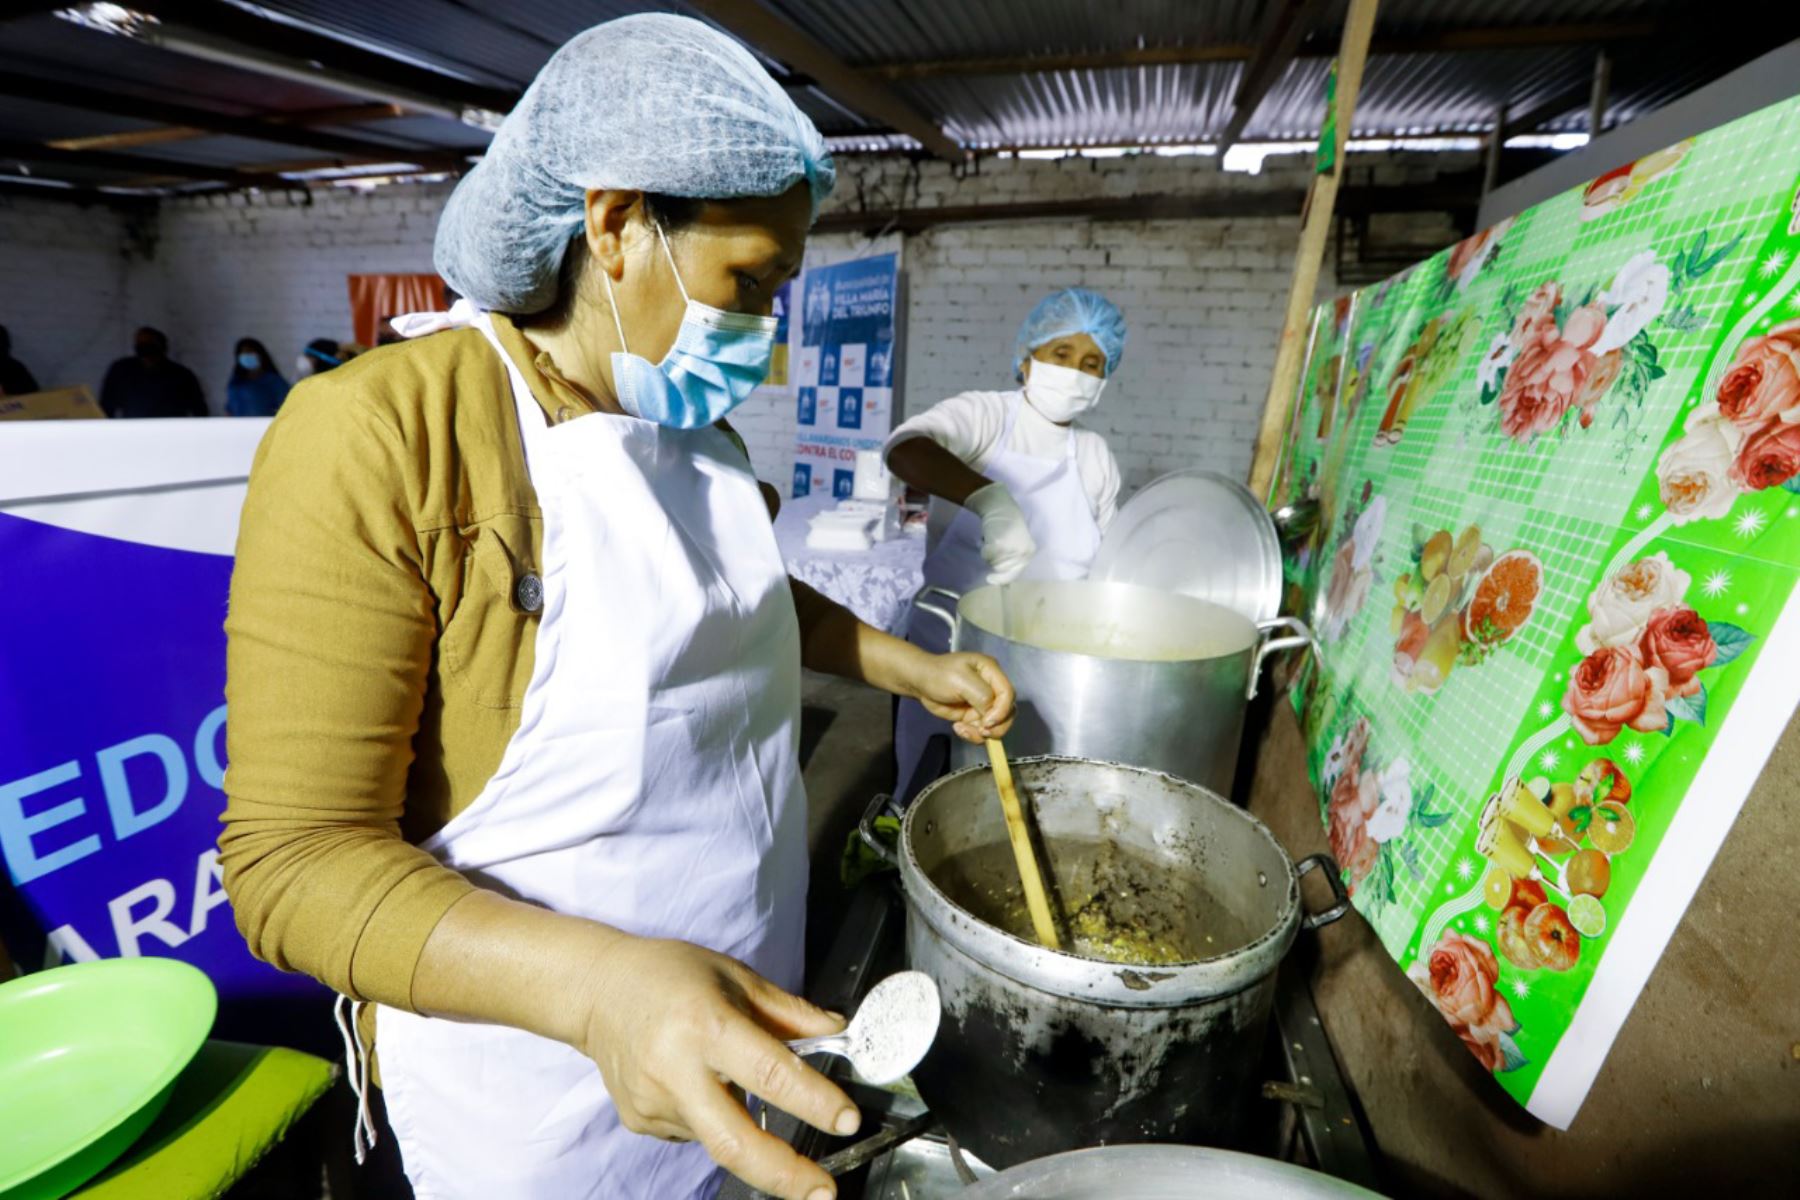 La ministra Silvana Vargas reconoció el trabajo de las organizaciones sociales que brindan alimentación a las personas más vulnerables. Foto: ANDINA/Difusión